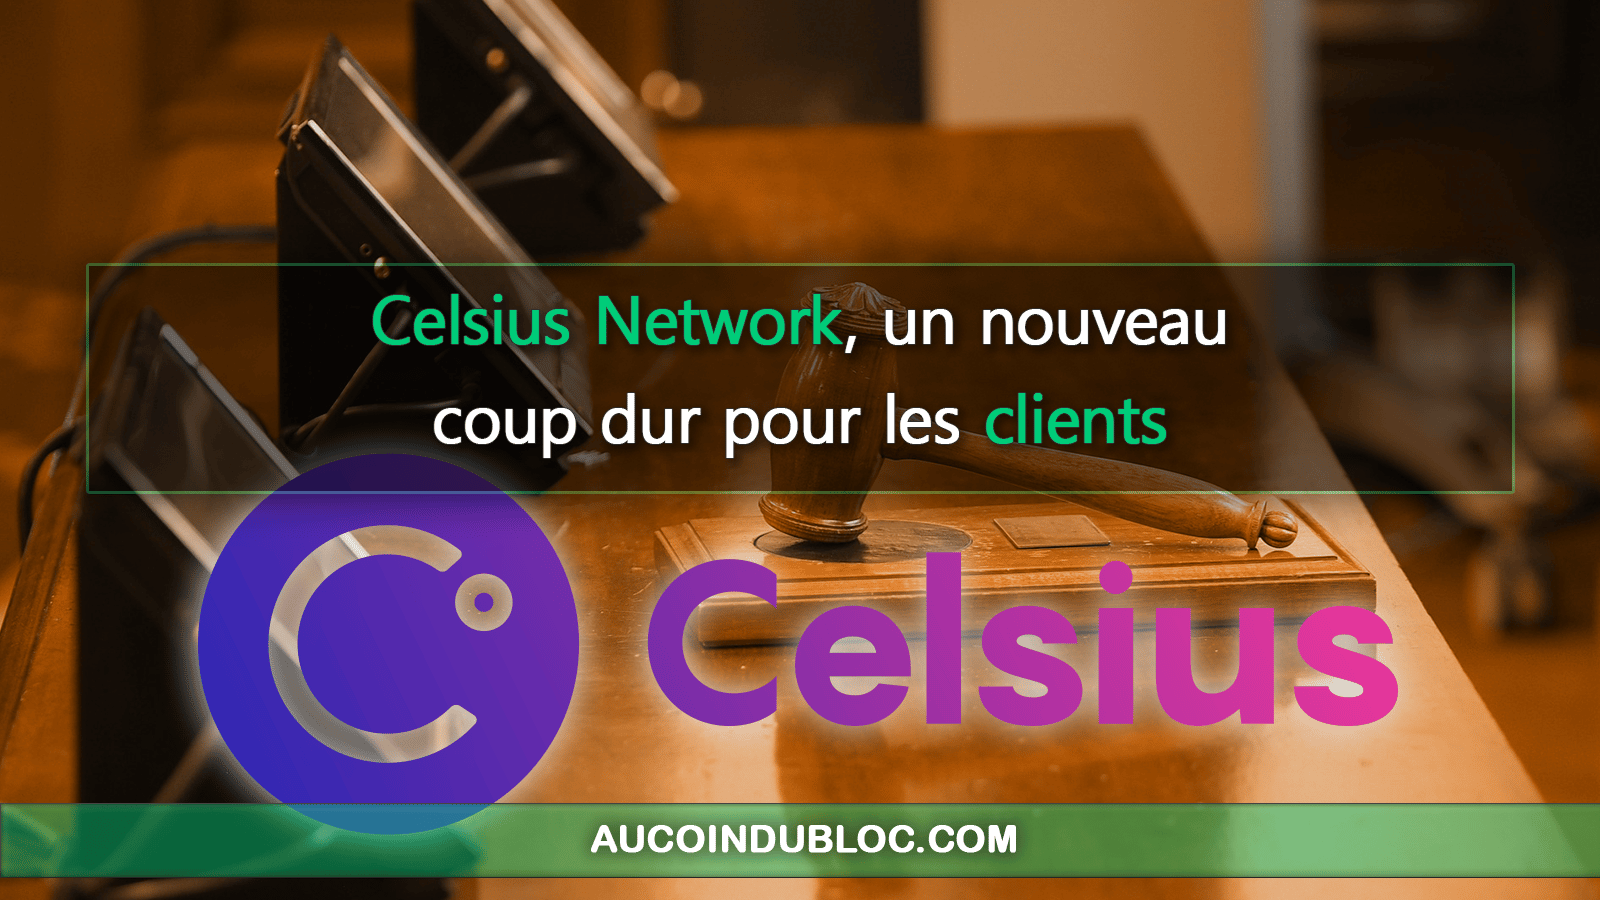 Celsius Network jugement clients